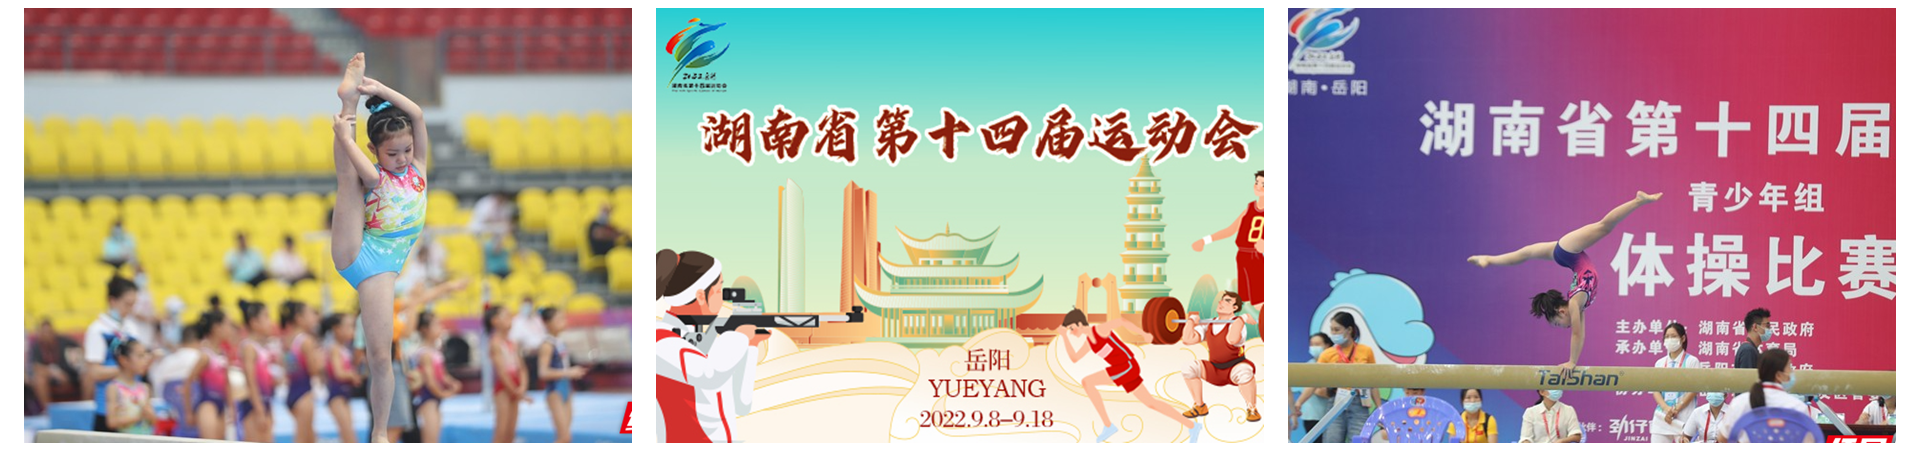 专题 | 2022湖南省第十四届运动会特别报道